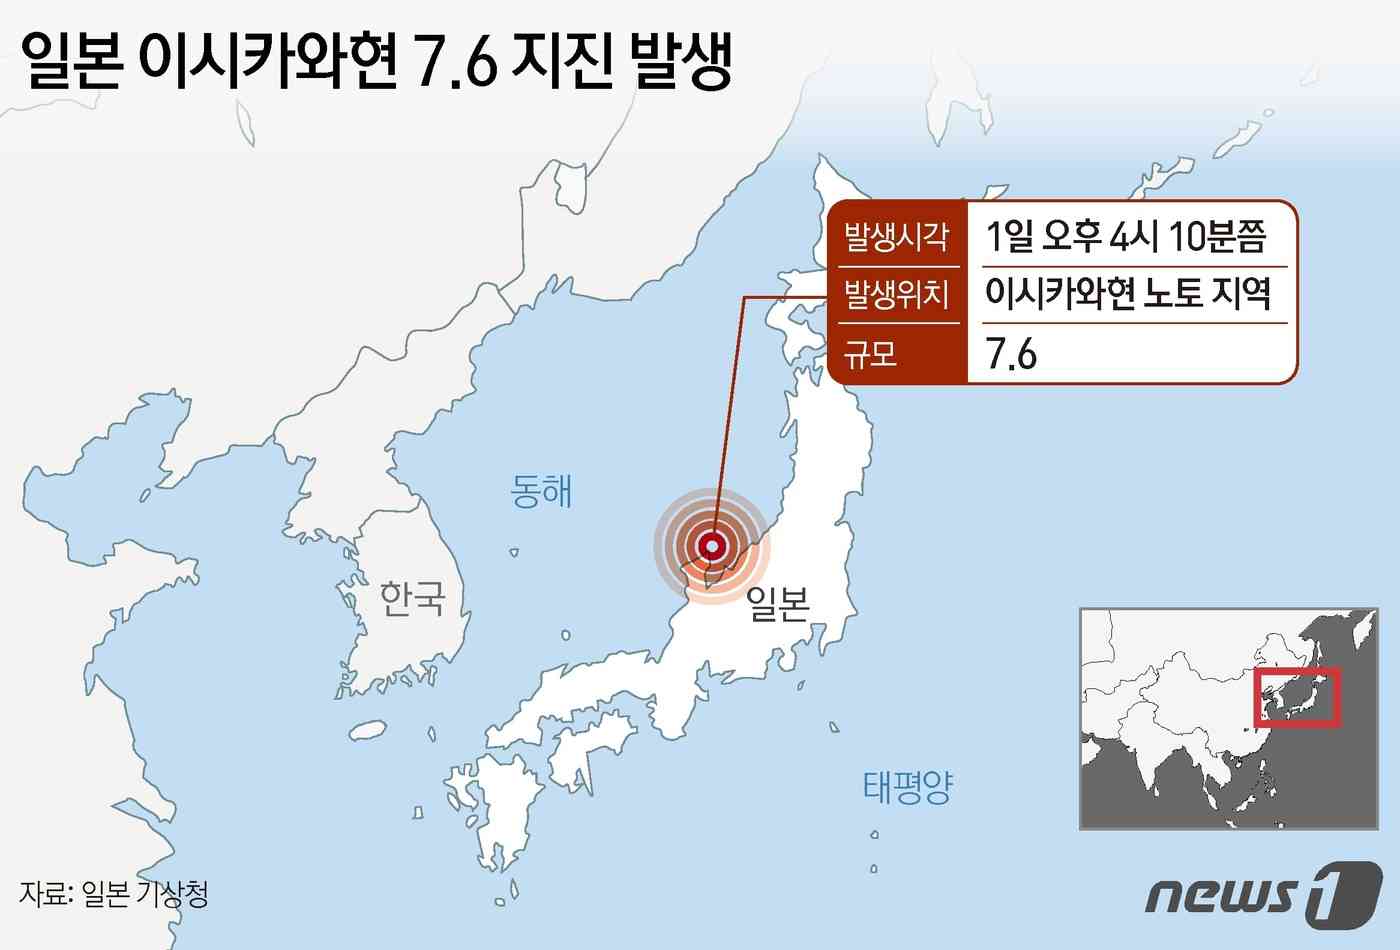 새해 첫날인 1일 오후 일본에서 규모 7.6 지진이 발생해 이시카와현 등 해안 지역에 쓰나미 경보가 내려졌다. 공영방송 NHK 등 현지 언론에 따르면 일본 기상 당국은 이날 오후 4시10분쯤 이시카와현 노토 지역에서 규모 7.6 지진이 발생했다고 밝혔다. 이에 이시카와현과 니가타 현, 도야마현 등 해안 지역에 쓰나미 경보가 발령됐다. © News1 김지영 디자이너